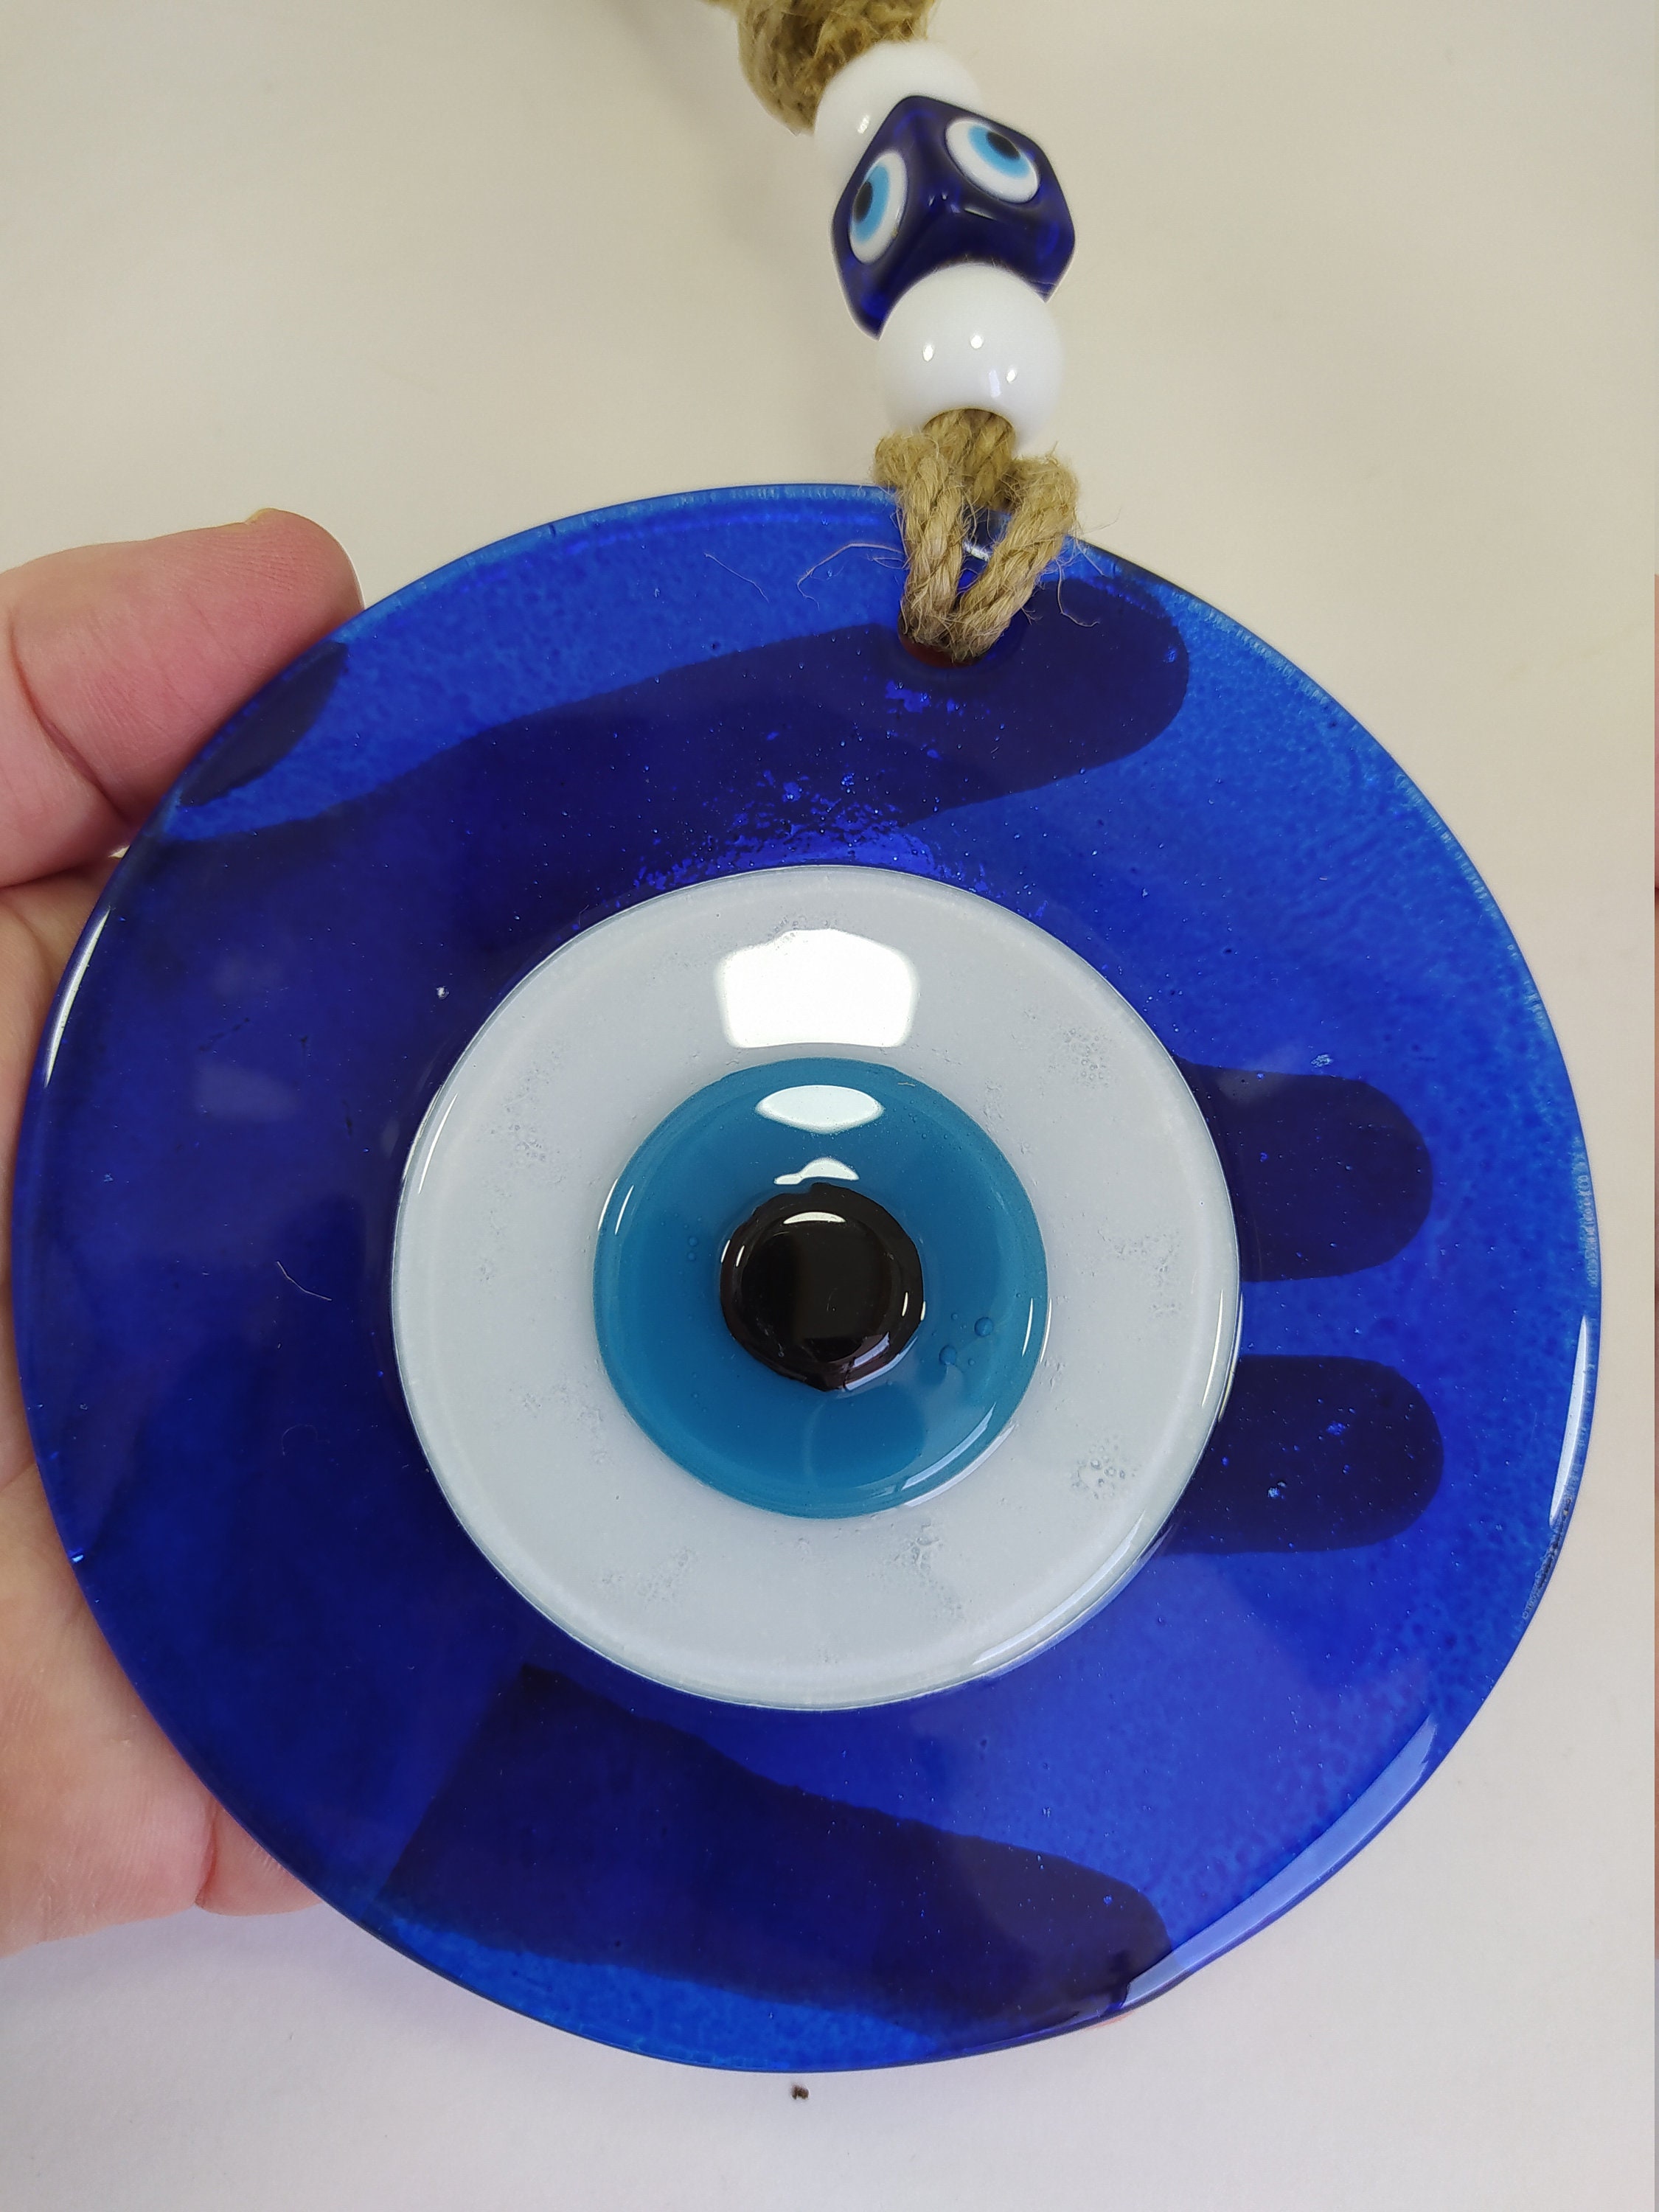  Fydun Türkisches blaues böses Auge Perlen Amulett Ornament mit  blauem Glas Anhänger für Home Lucky Protection Wandbehang Dekoration